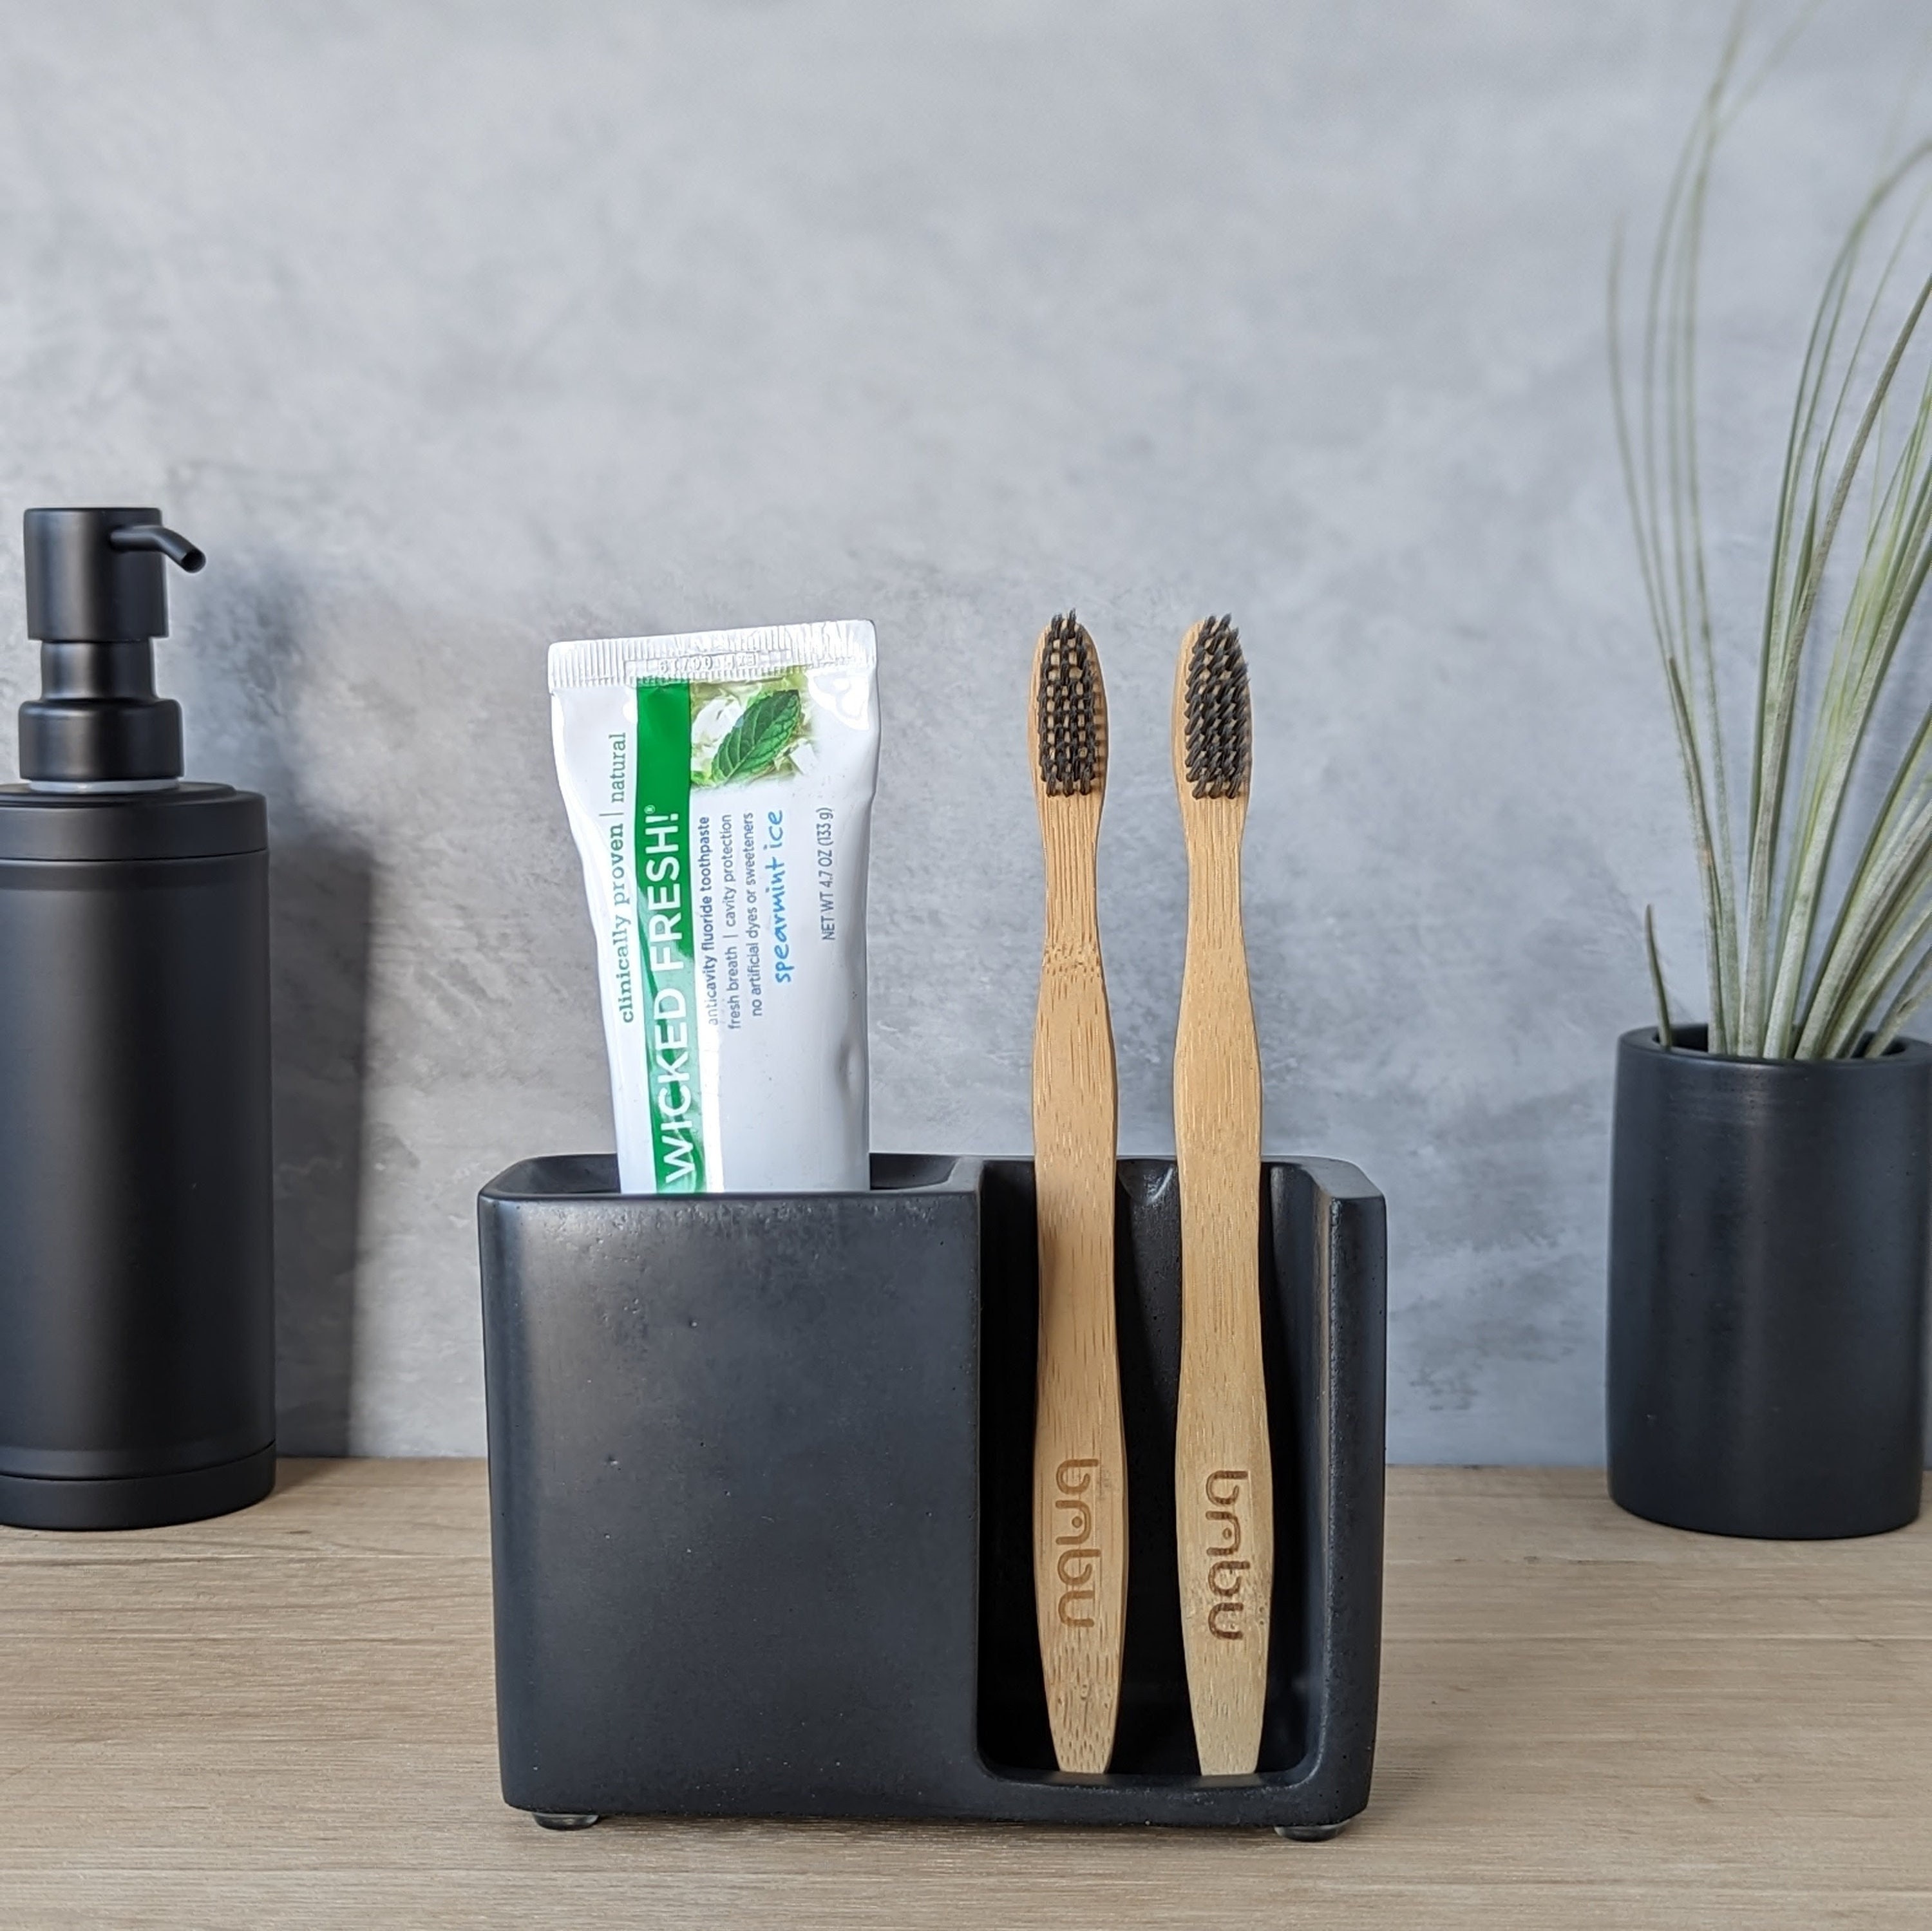 Concrete Toothbrush Holder -   Brushing teeth, Diy ceramic, Cement diy